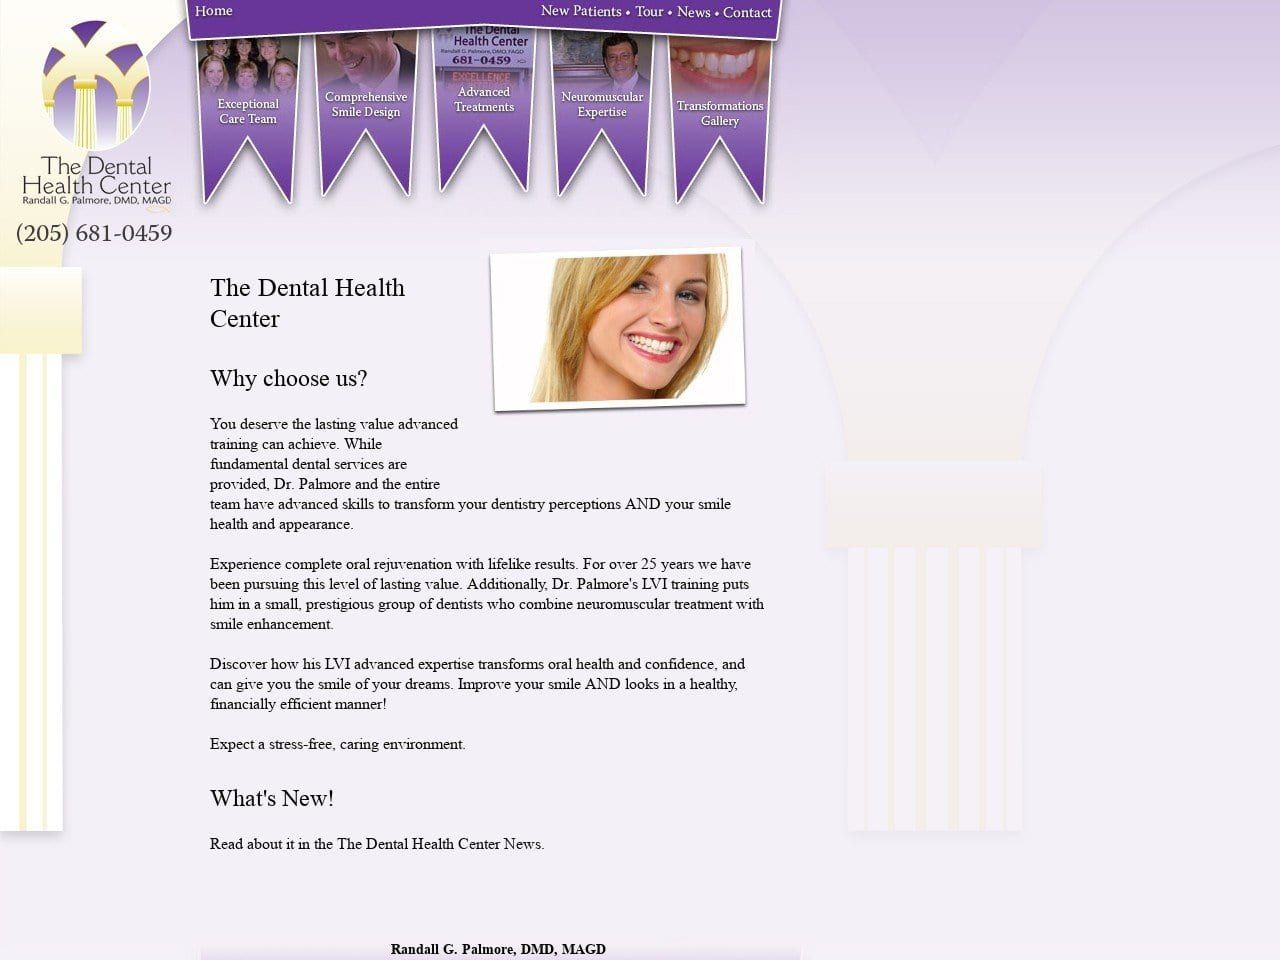 Dental Health Center Website Screenshot from southernsmile.com